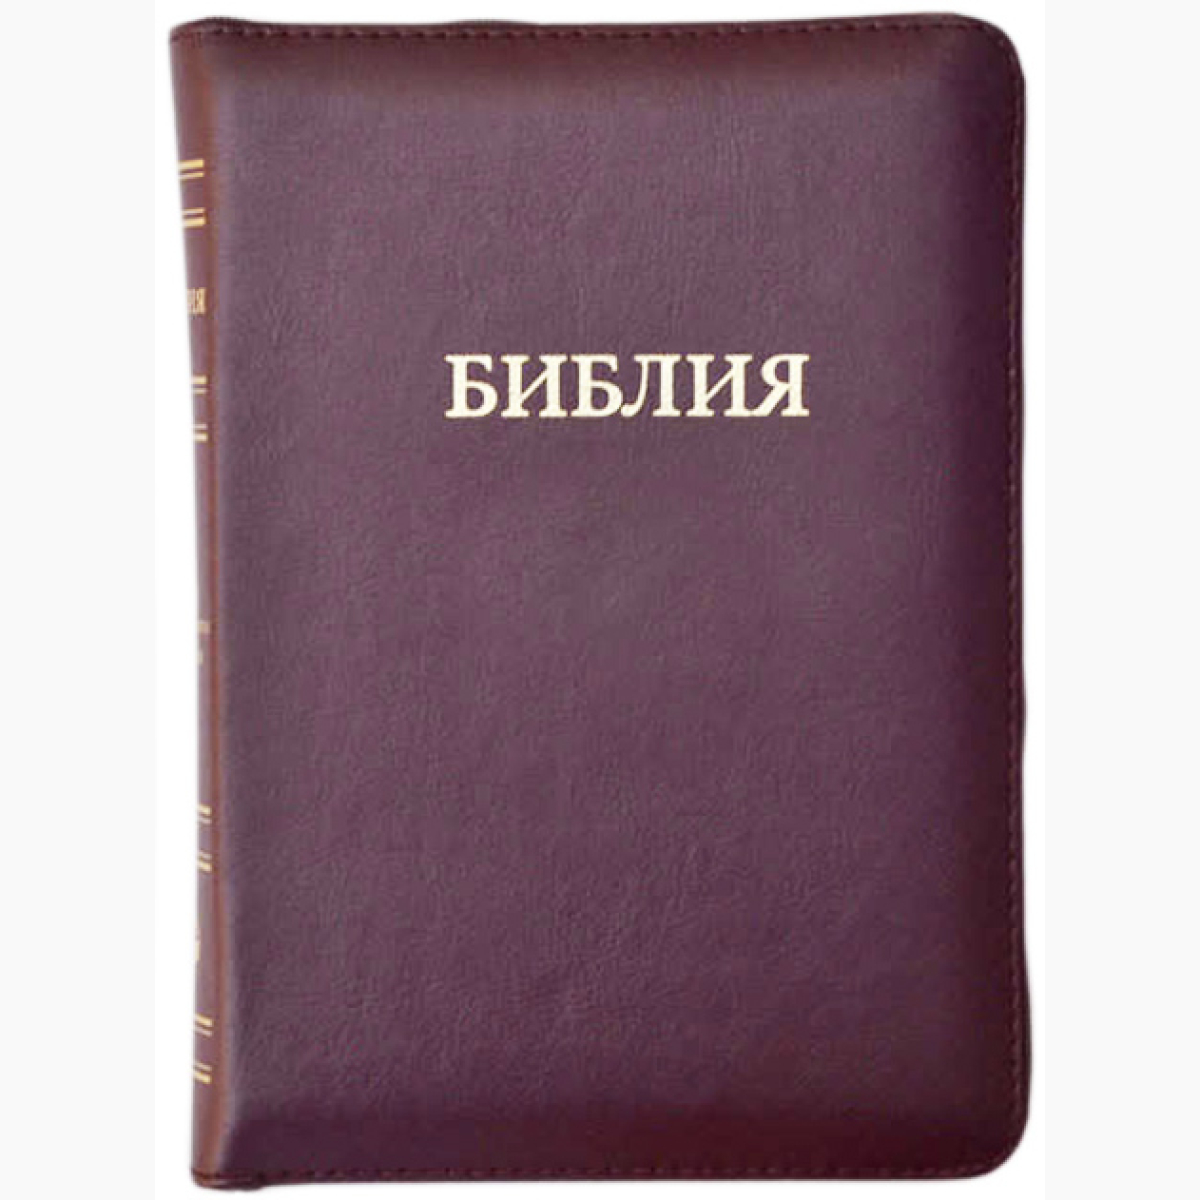 Библия бордовая. «Библия большая». Библия с золотыми страницами. Библия 77 книг